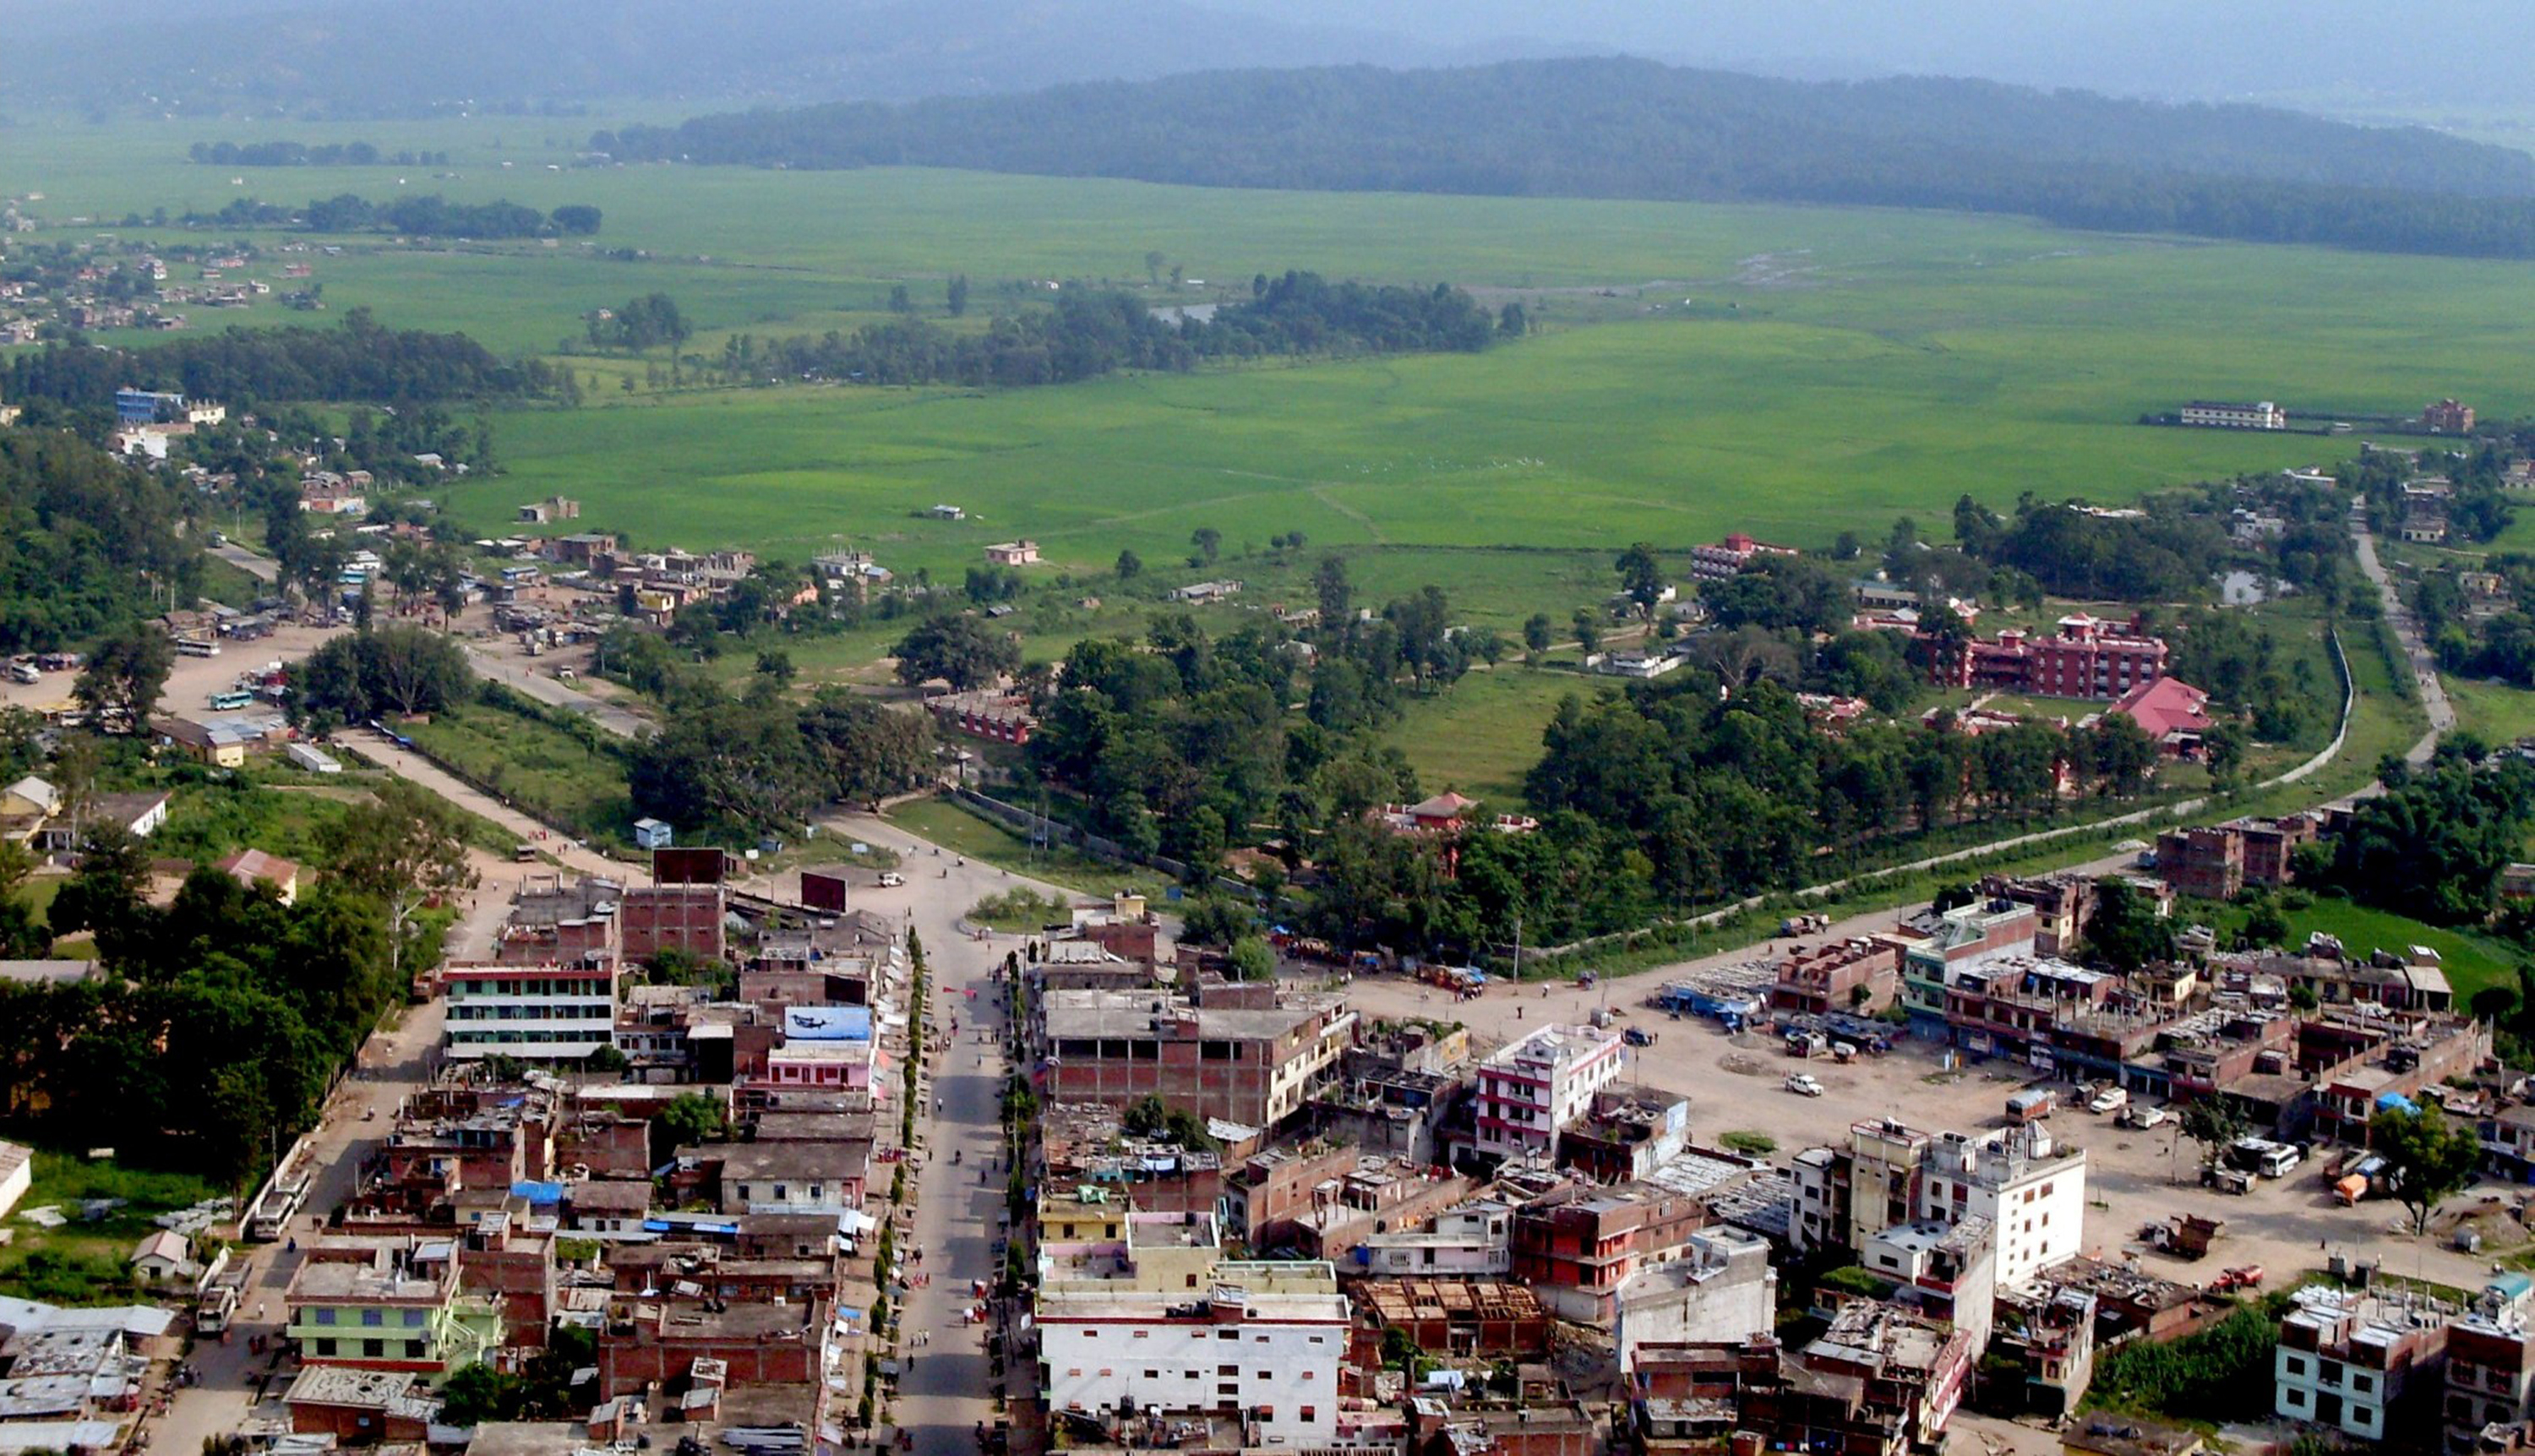 Surkhet quiet as lockdown in effect even in Raute settlement